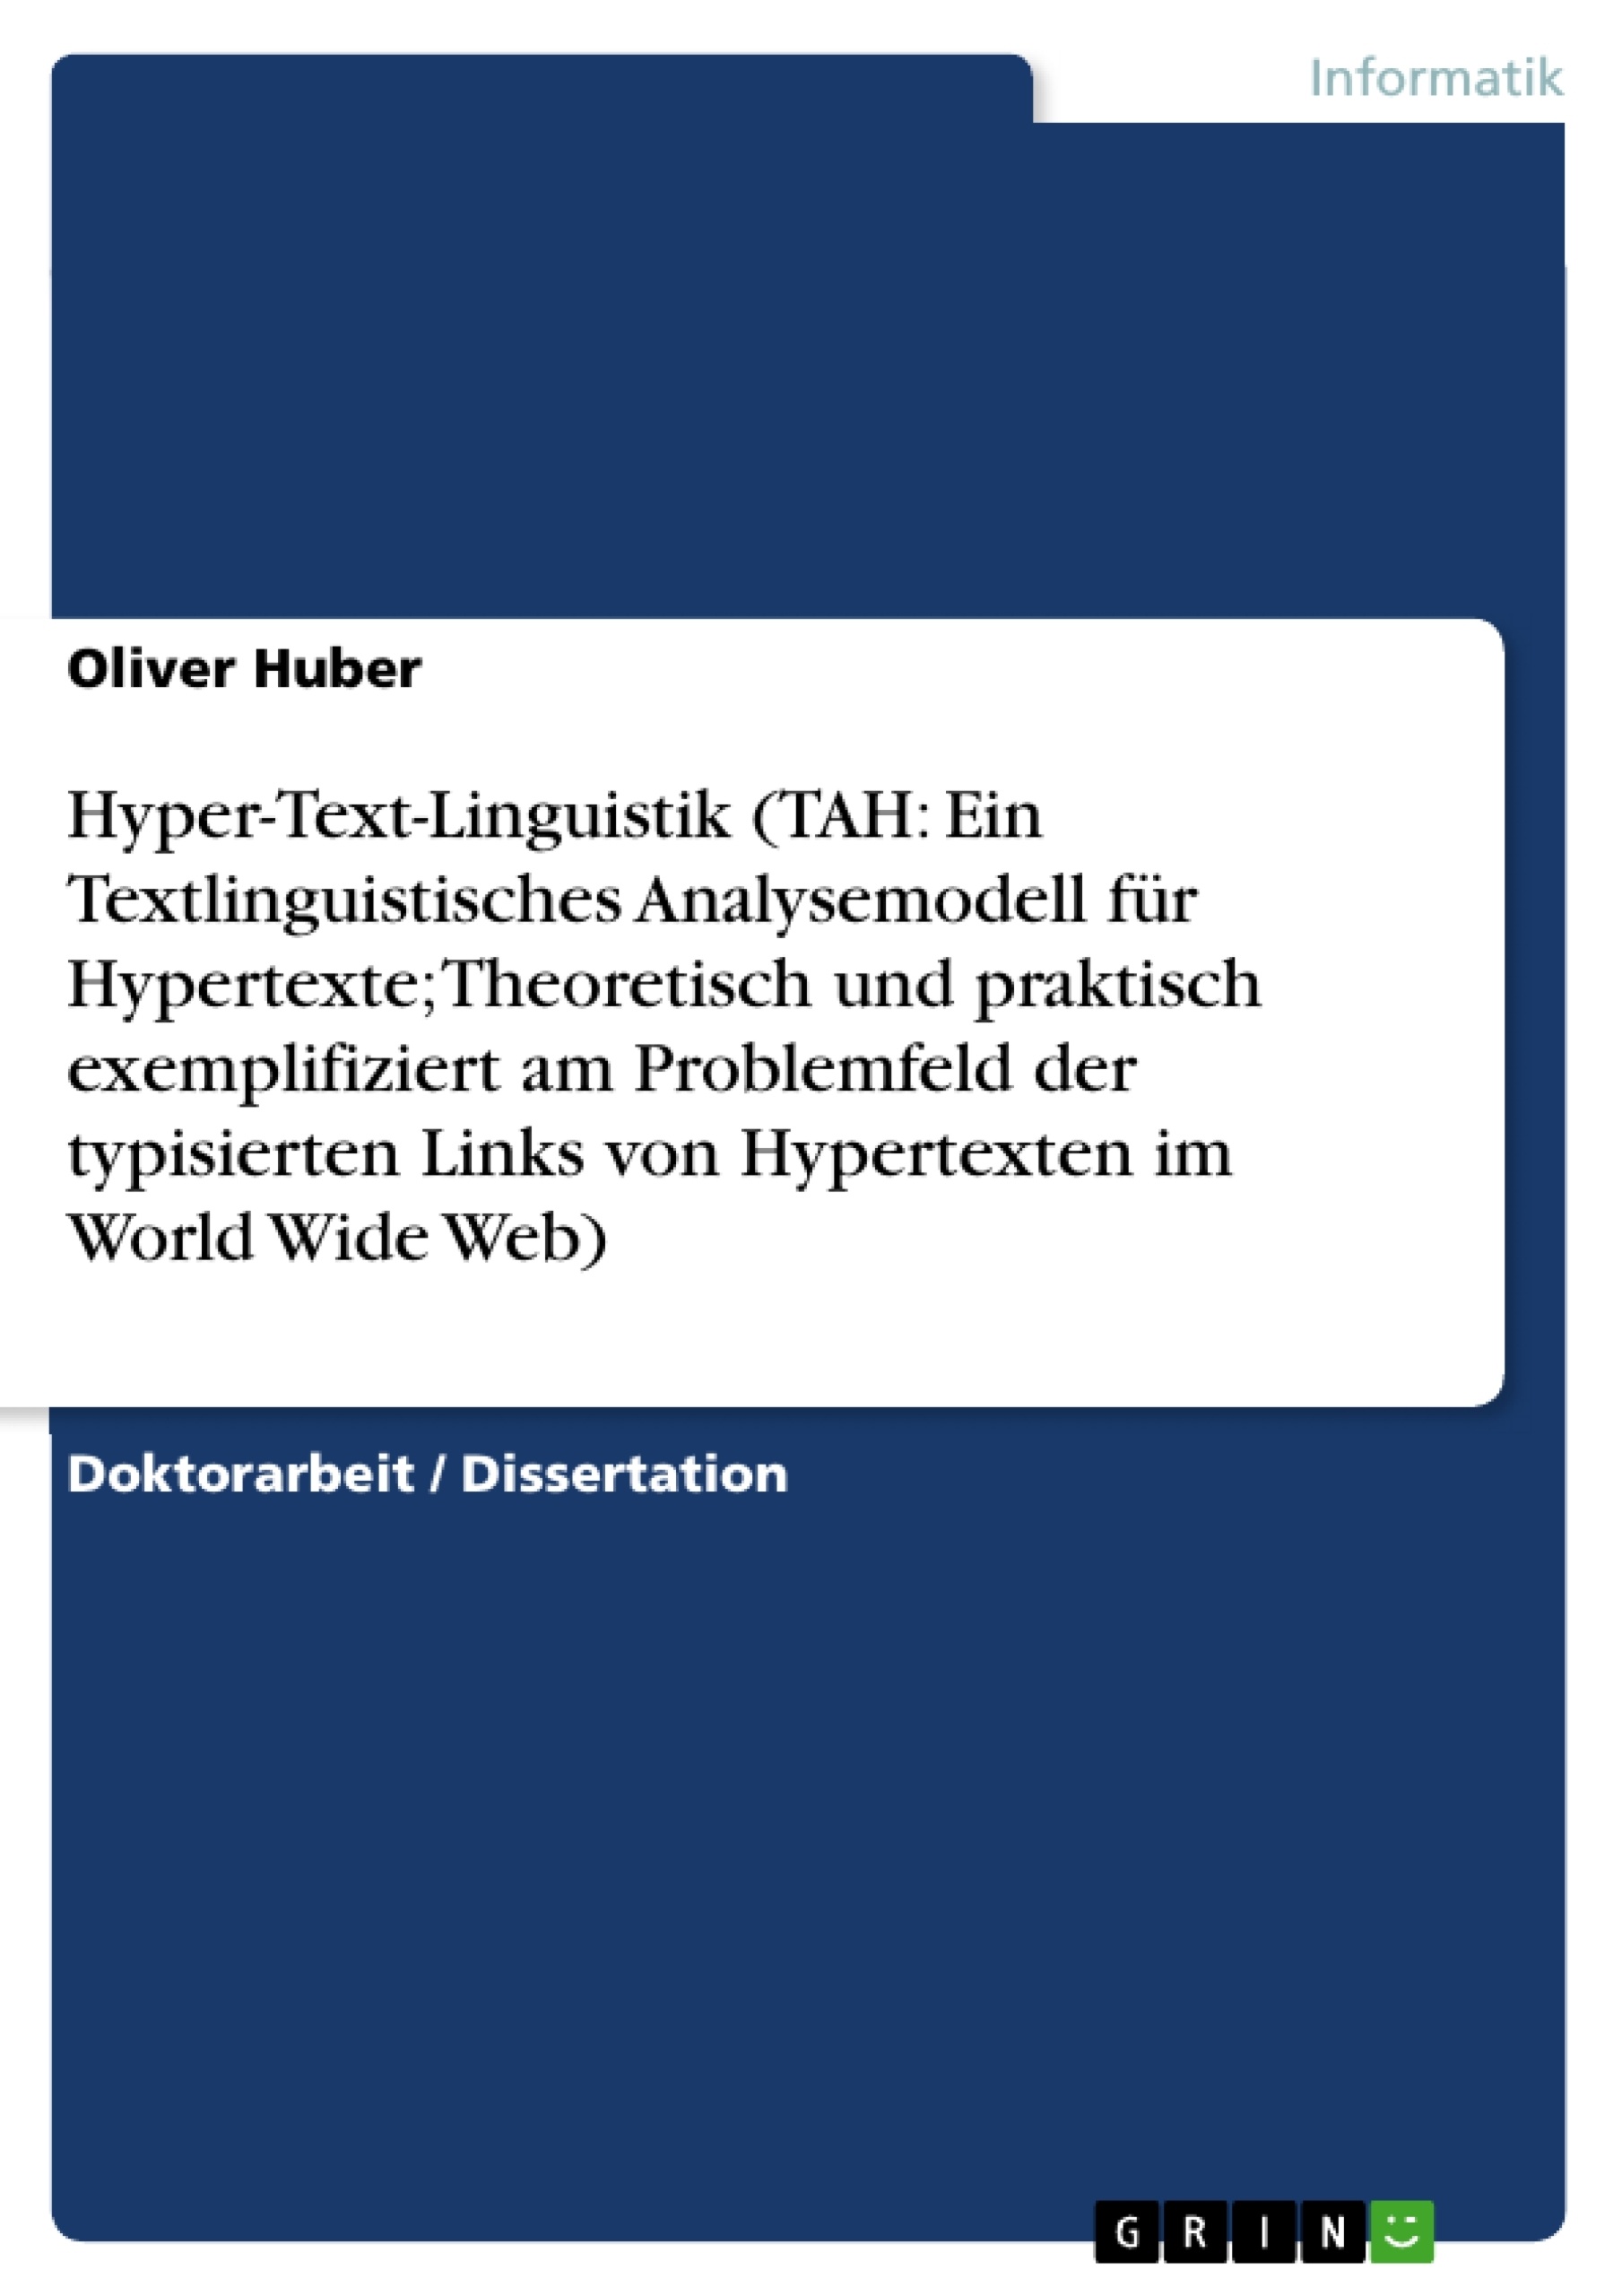 Title: Hyper-Text-Linguistik (TAH: Ein Textlinguistisches Analysemodell für Hypertexte; Theoretisch und praktisch exemplifiziert am Problemfeld der typisierten Links von Hypertexten im World Wide Web)